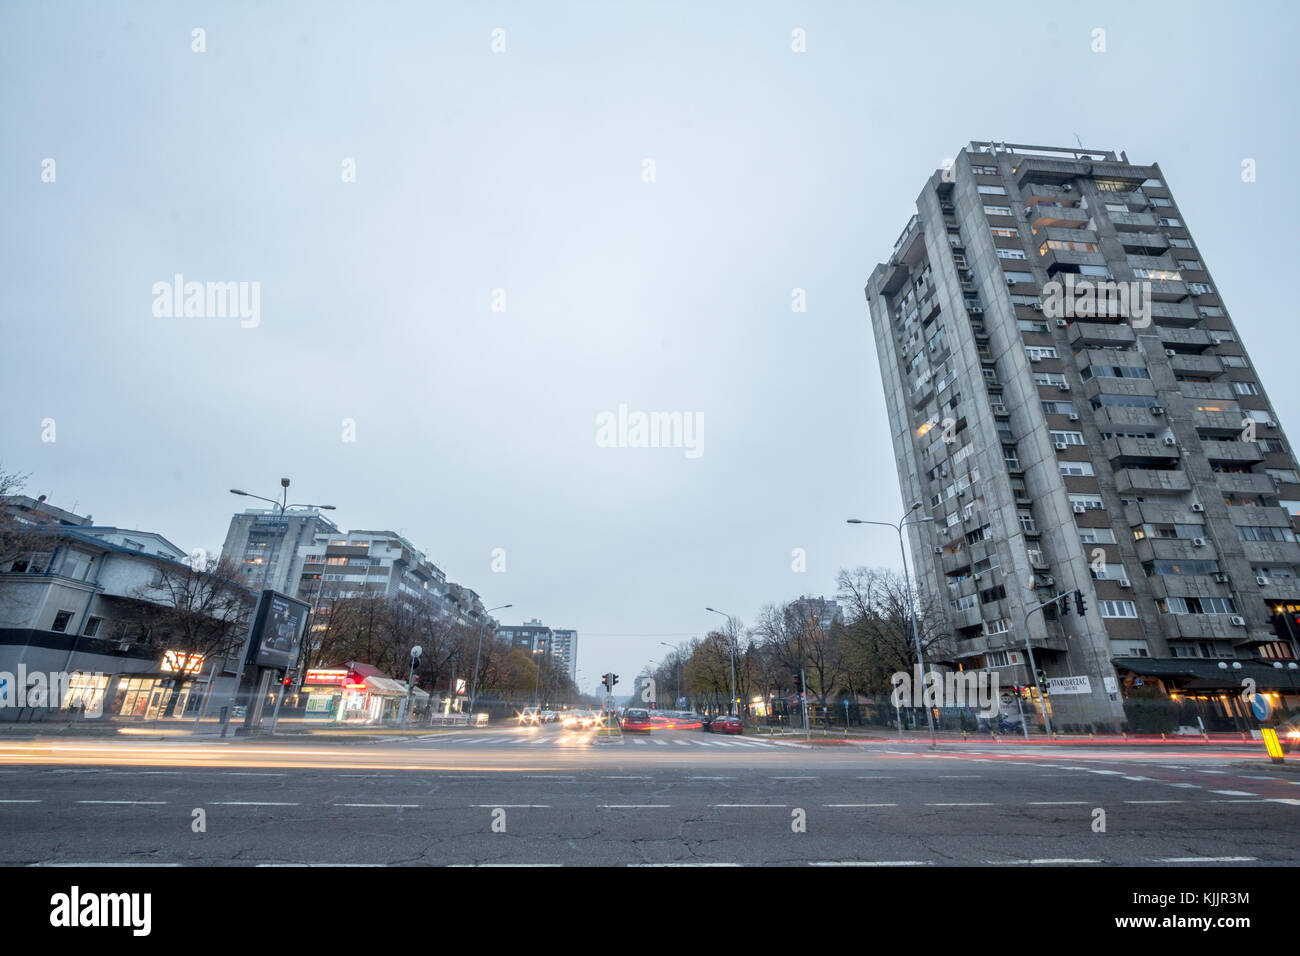 Belgrad, Serbien - November 19, 2017: Straße in Neu Belgrad mit hohen Wohngebäuden altern aus der kommunistischen Ära auf der Seite neu gebaut. Stockfoto